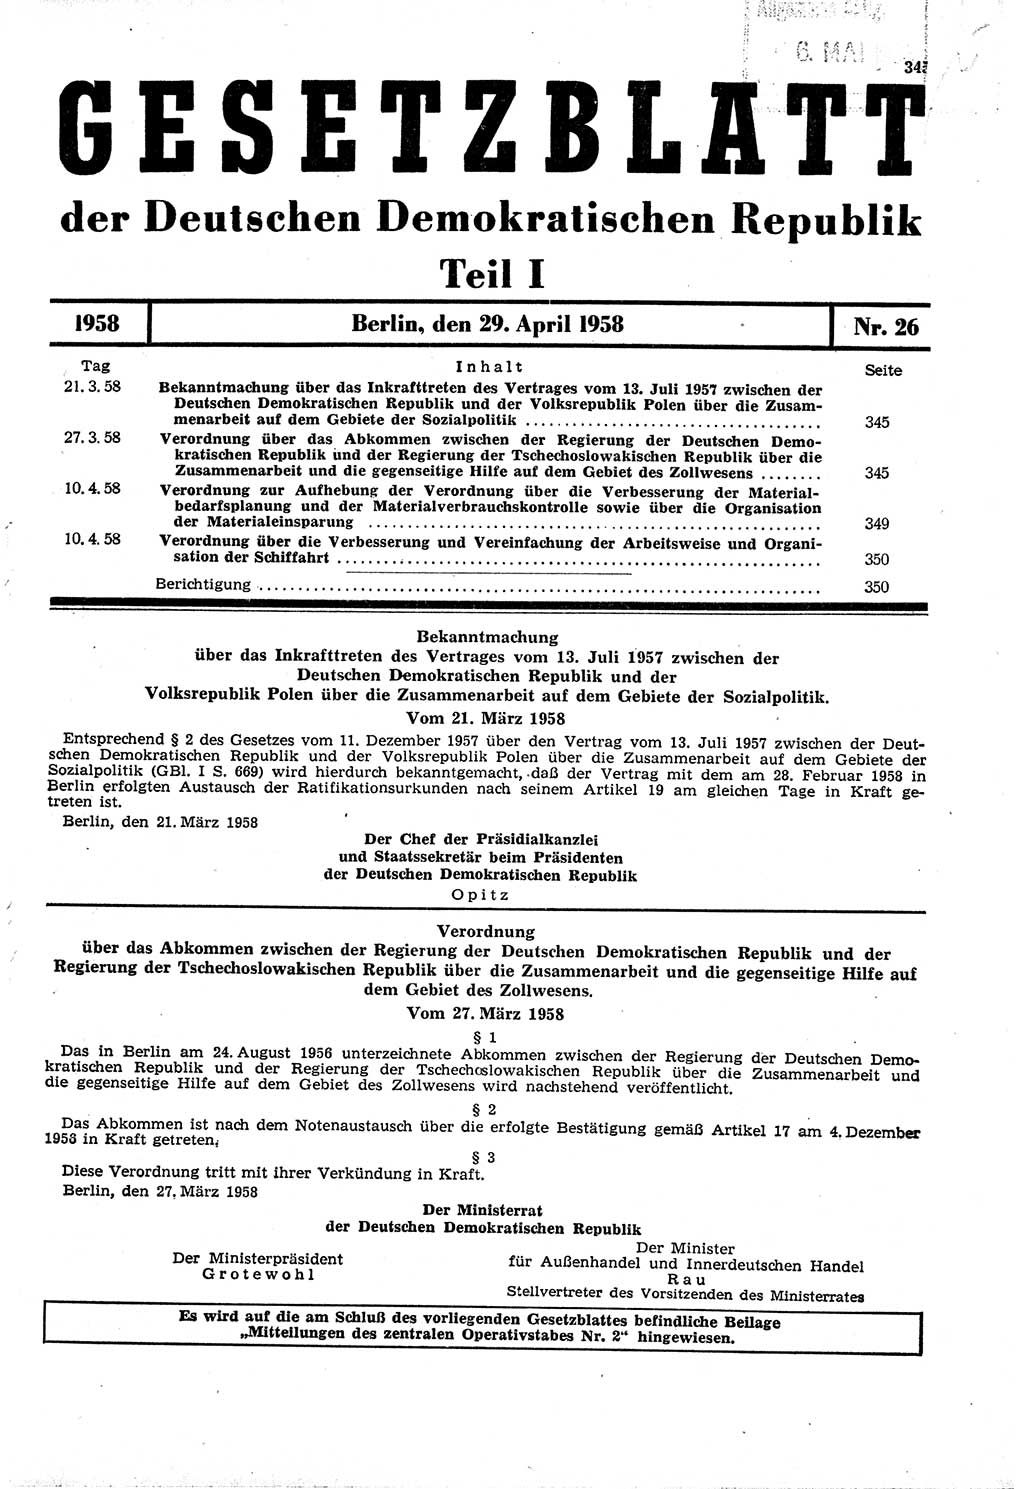 Gesetzblatt (GBl.) der Deutschen Demokratischen Republik (DDR) Teil Ⅰ 1958, Seite 345 (GBl. DDR Ⅰ 1958, S. 345)